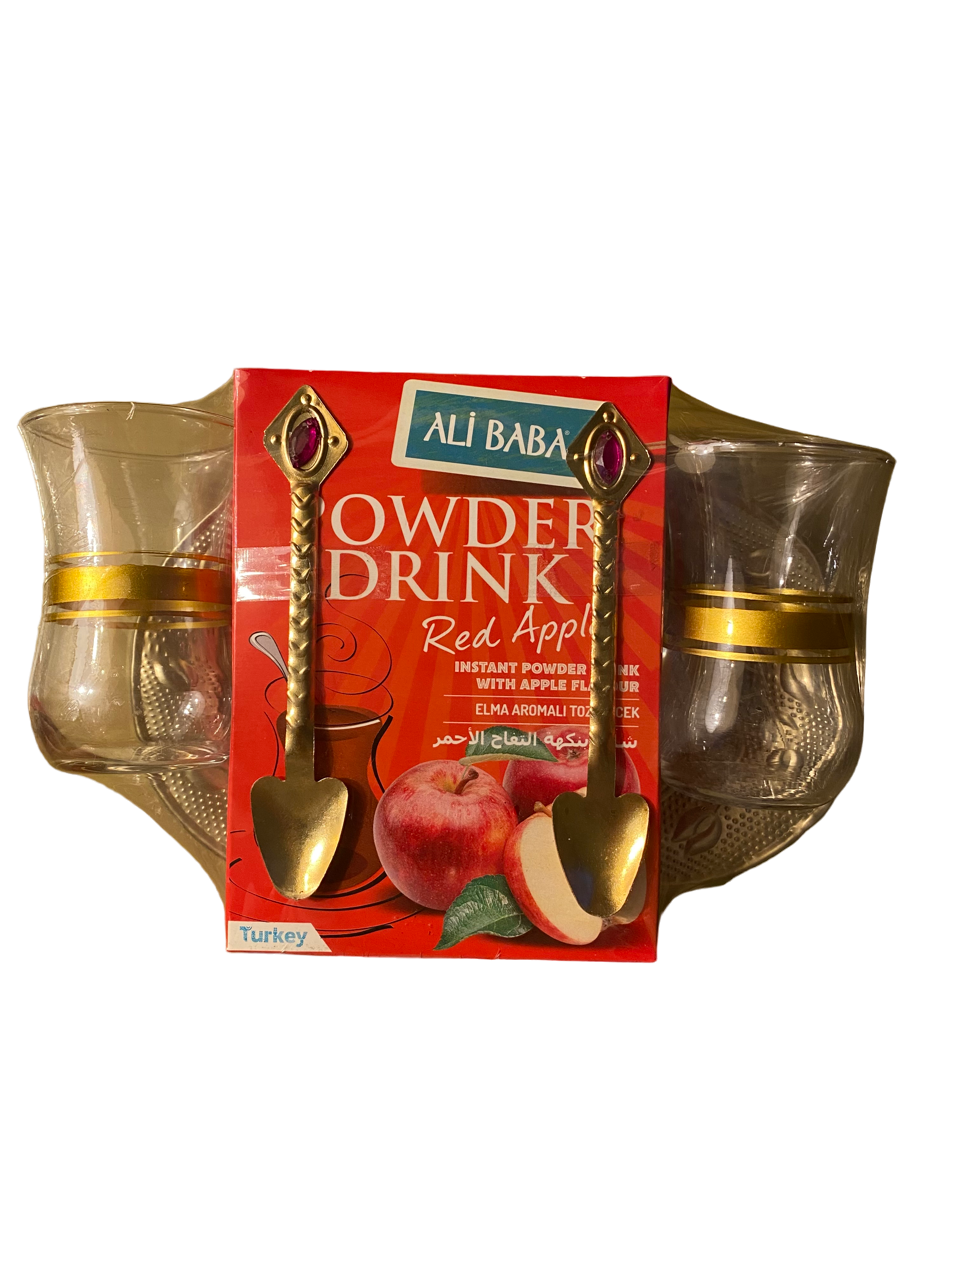 Thé instantané turc saveur pomme rouge - Ensemble 3 pièces - set thé avec verres - poudre instantanée pomme rouge